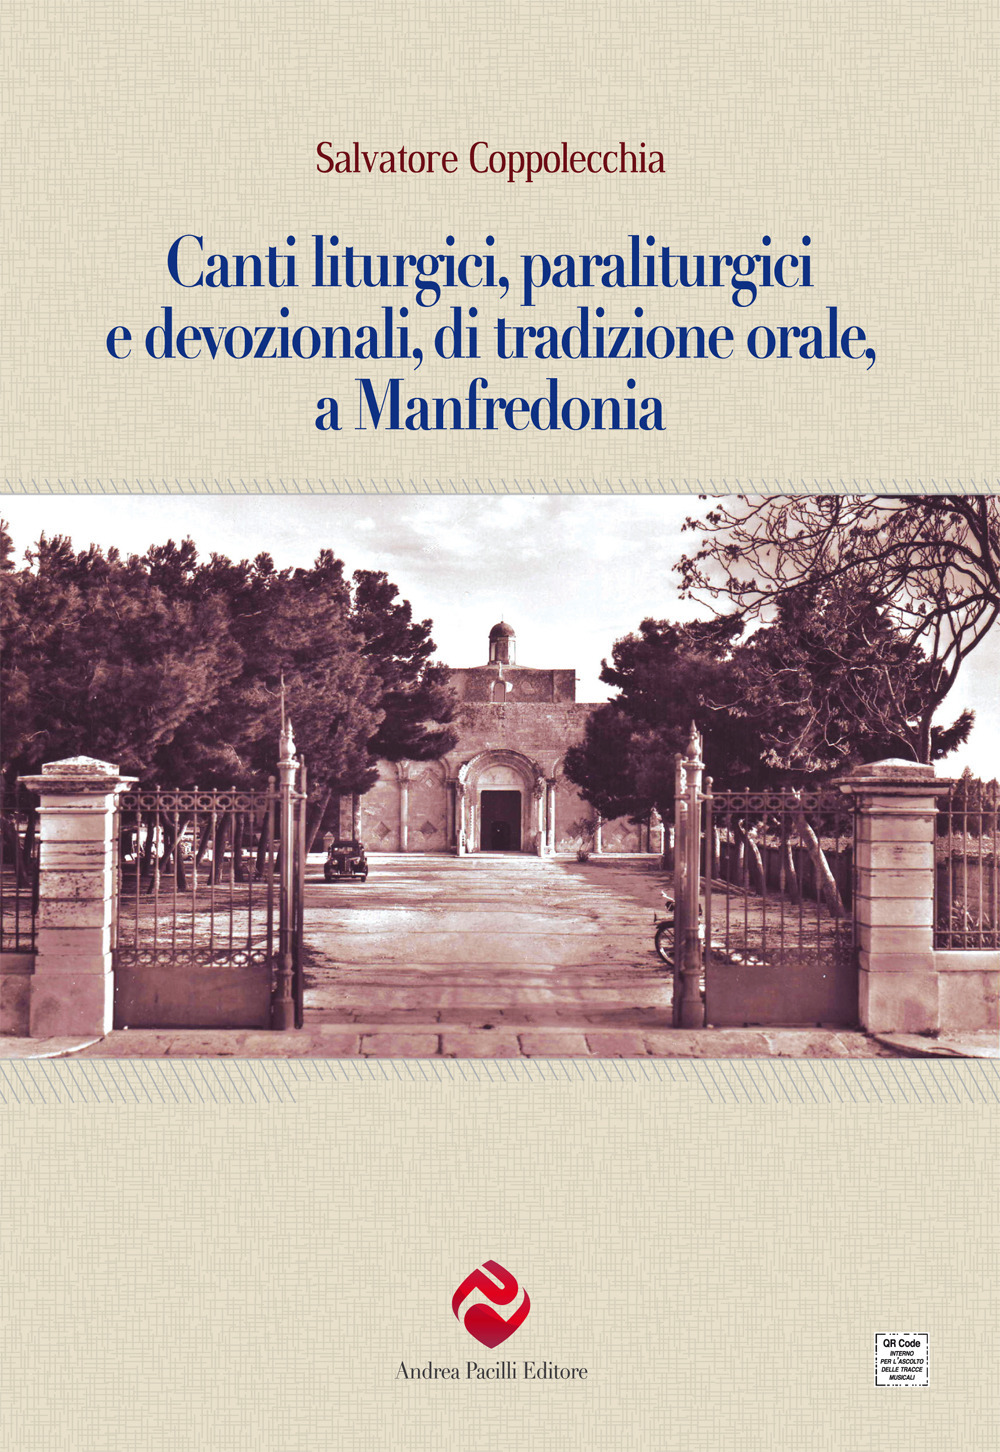 Canti liturgici, paraliturgici e devozionali, di tradizione orale, a Manfredonia